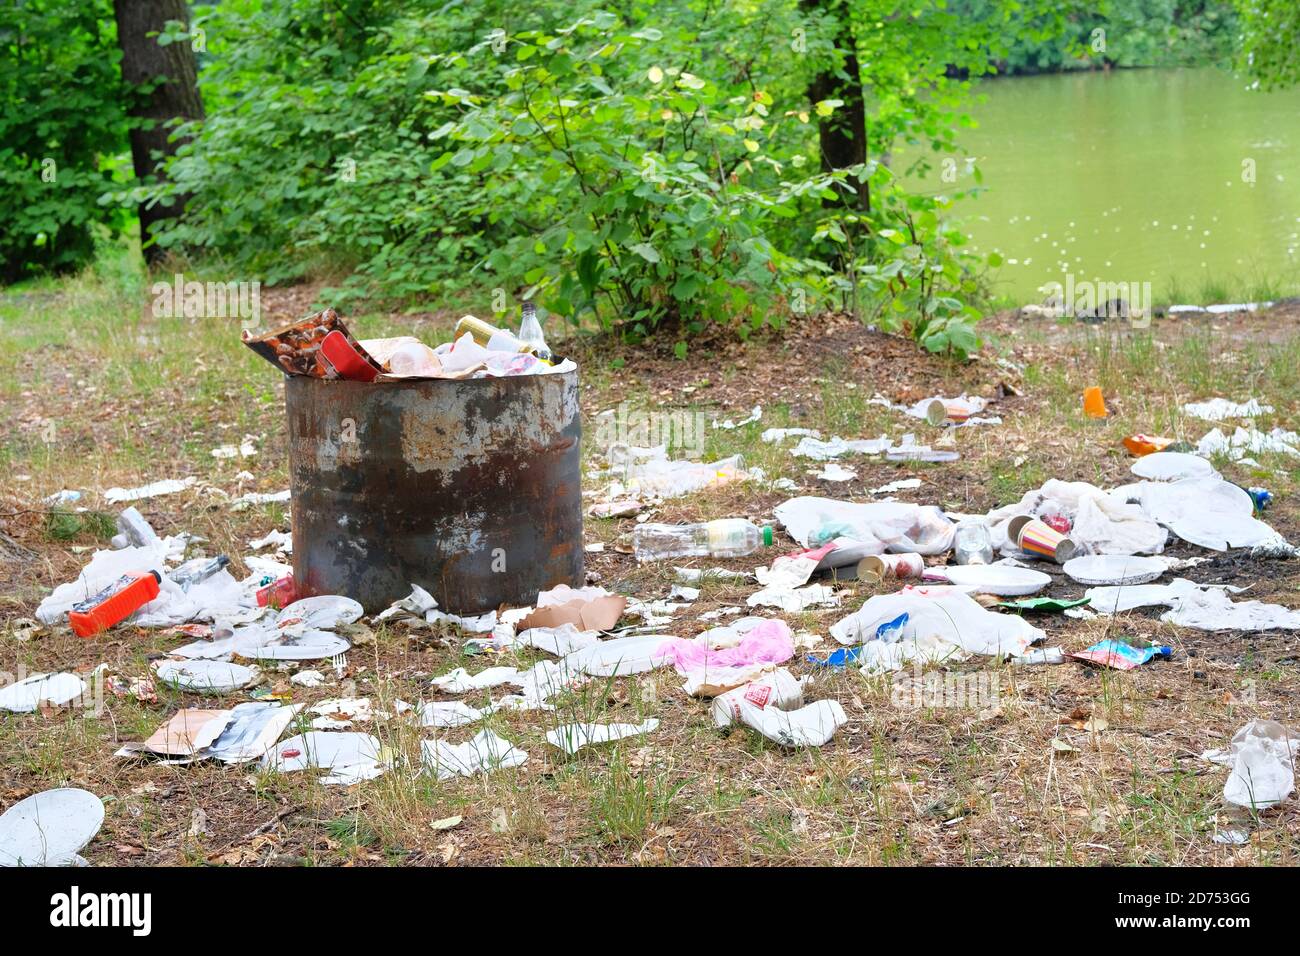 Contamination de la nature par des déchets. Les déchets de plastique et de papier sont en cours de défrichement dans la forêt verte. Concept de pollution de l'environnement. Banque D'Images